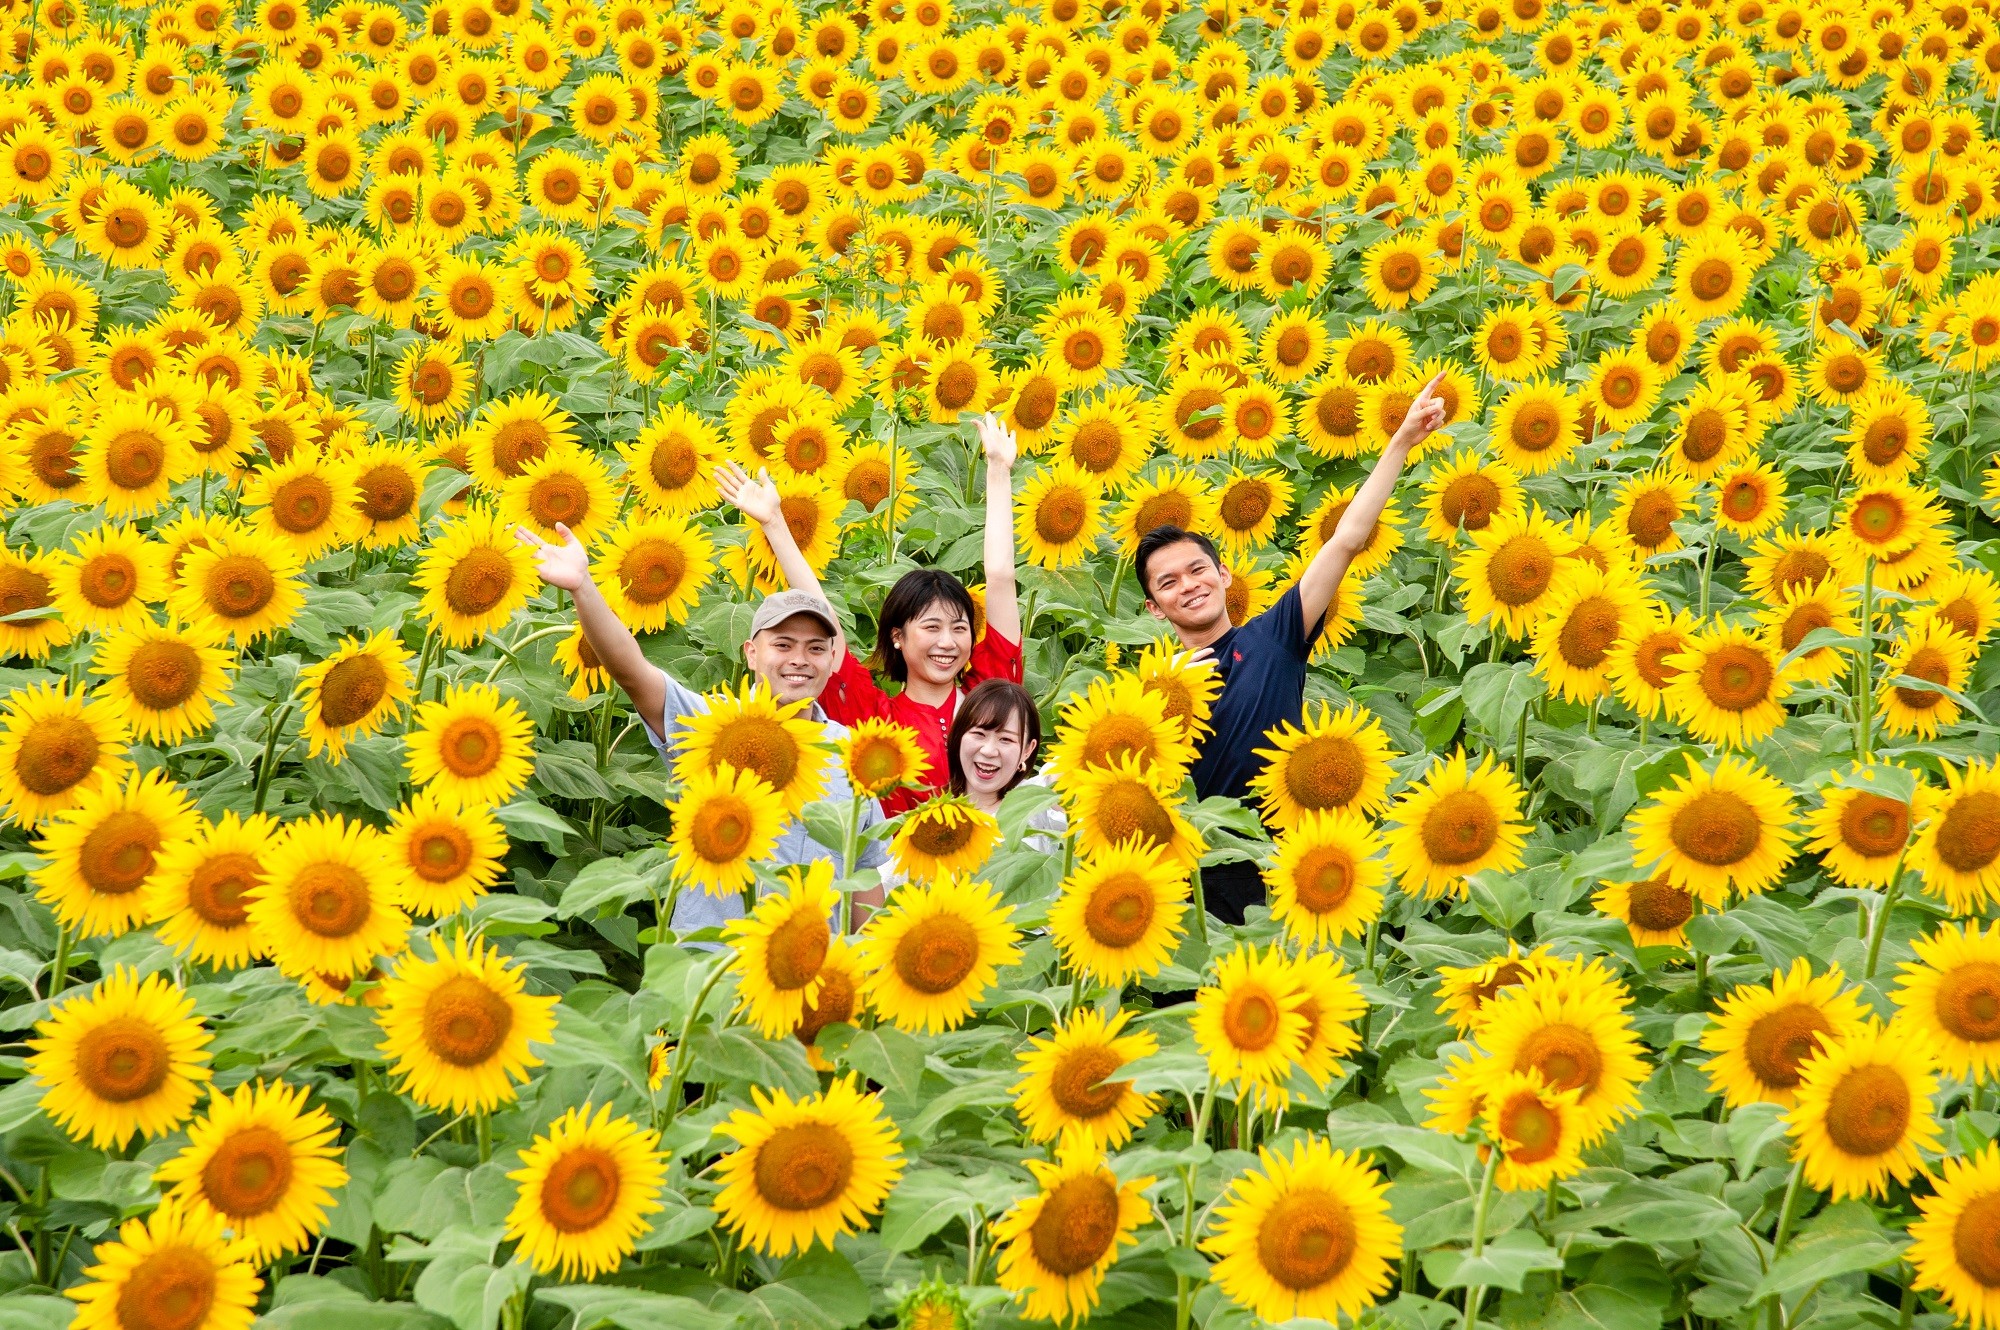 夏日風物詩！約50萬棵向日葵熱情綻放，打造出一片金黃色的夏日絕景「津南向日葵廣場」